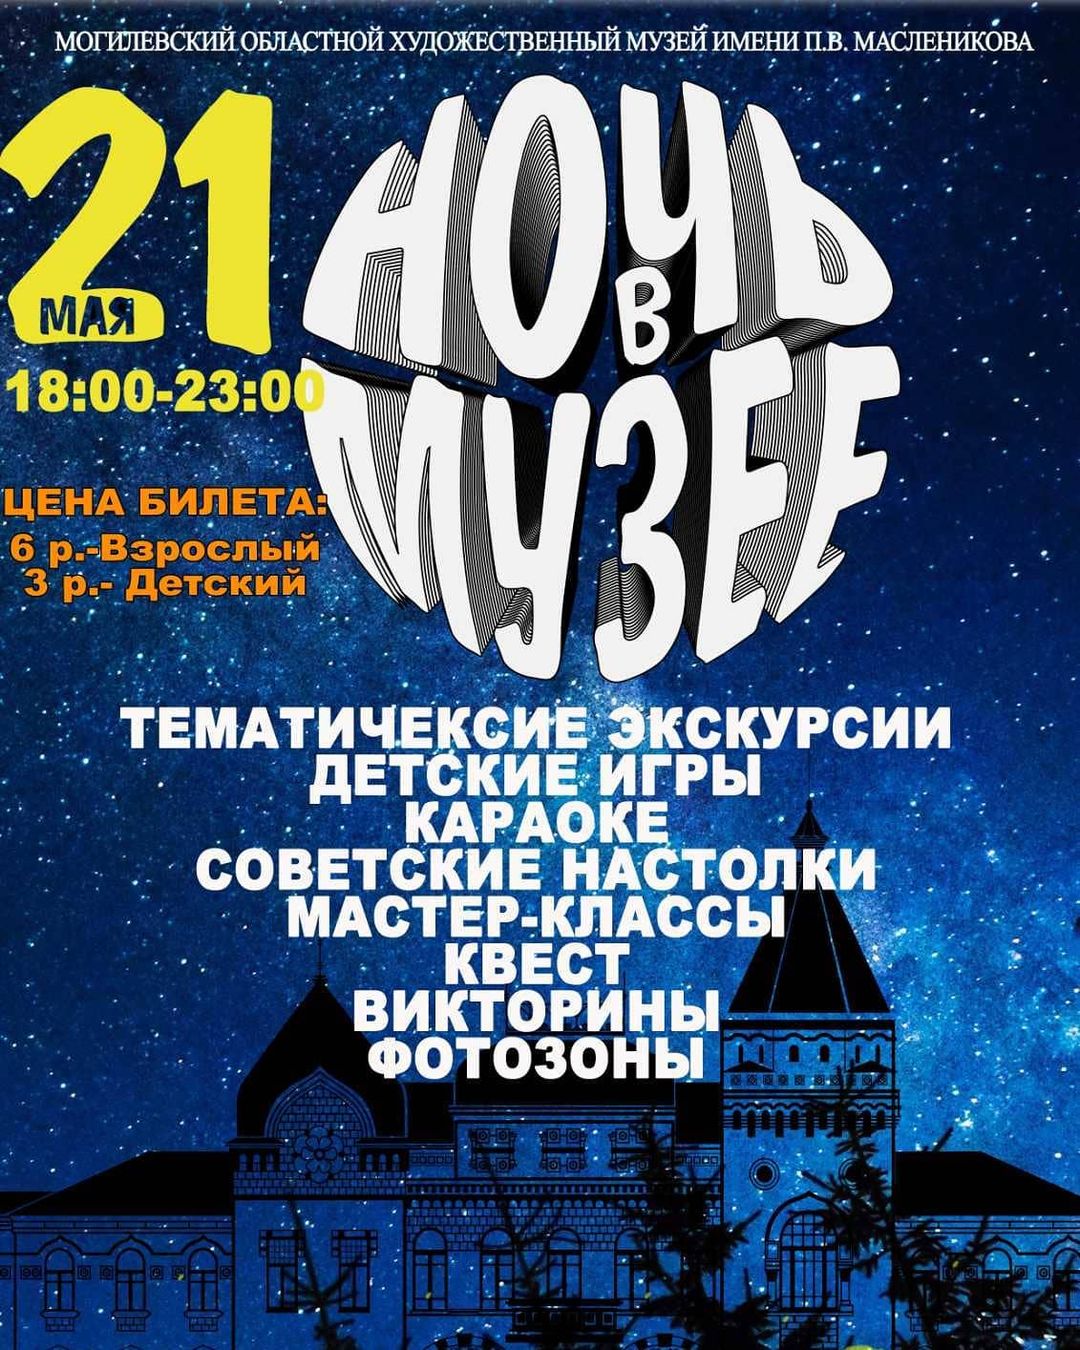 «Ночь в музее» состоится в Могилевском художественном музее 21 мая